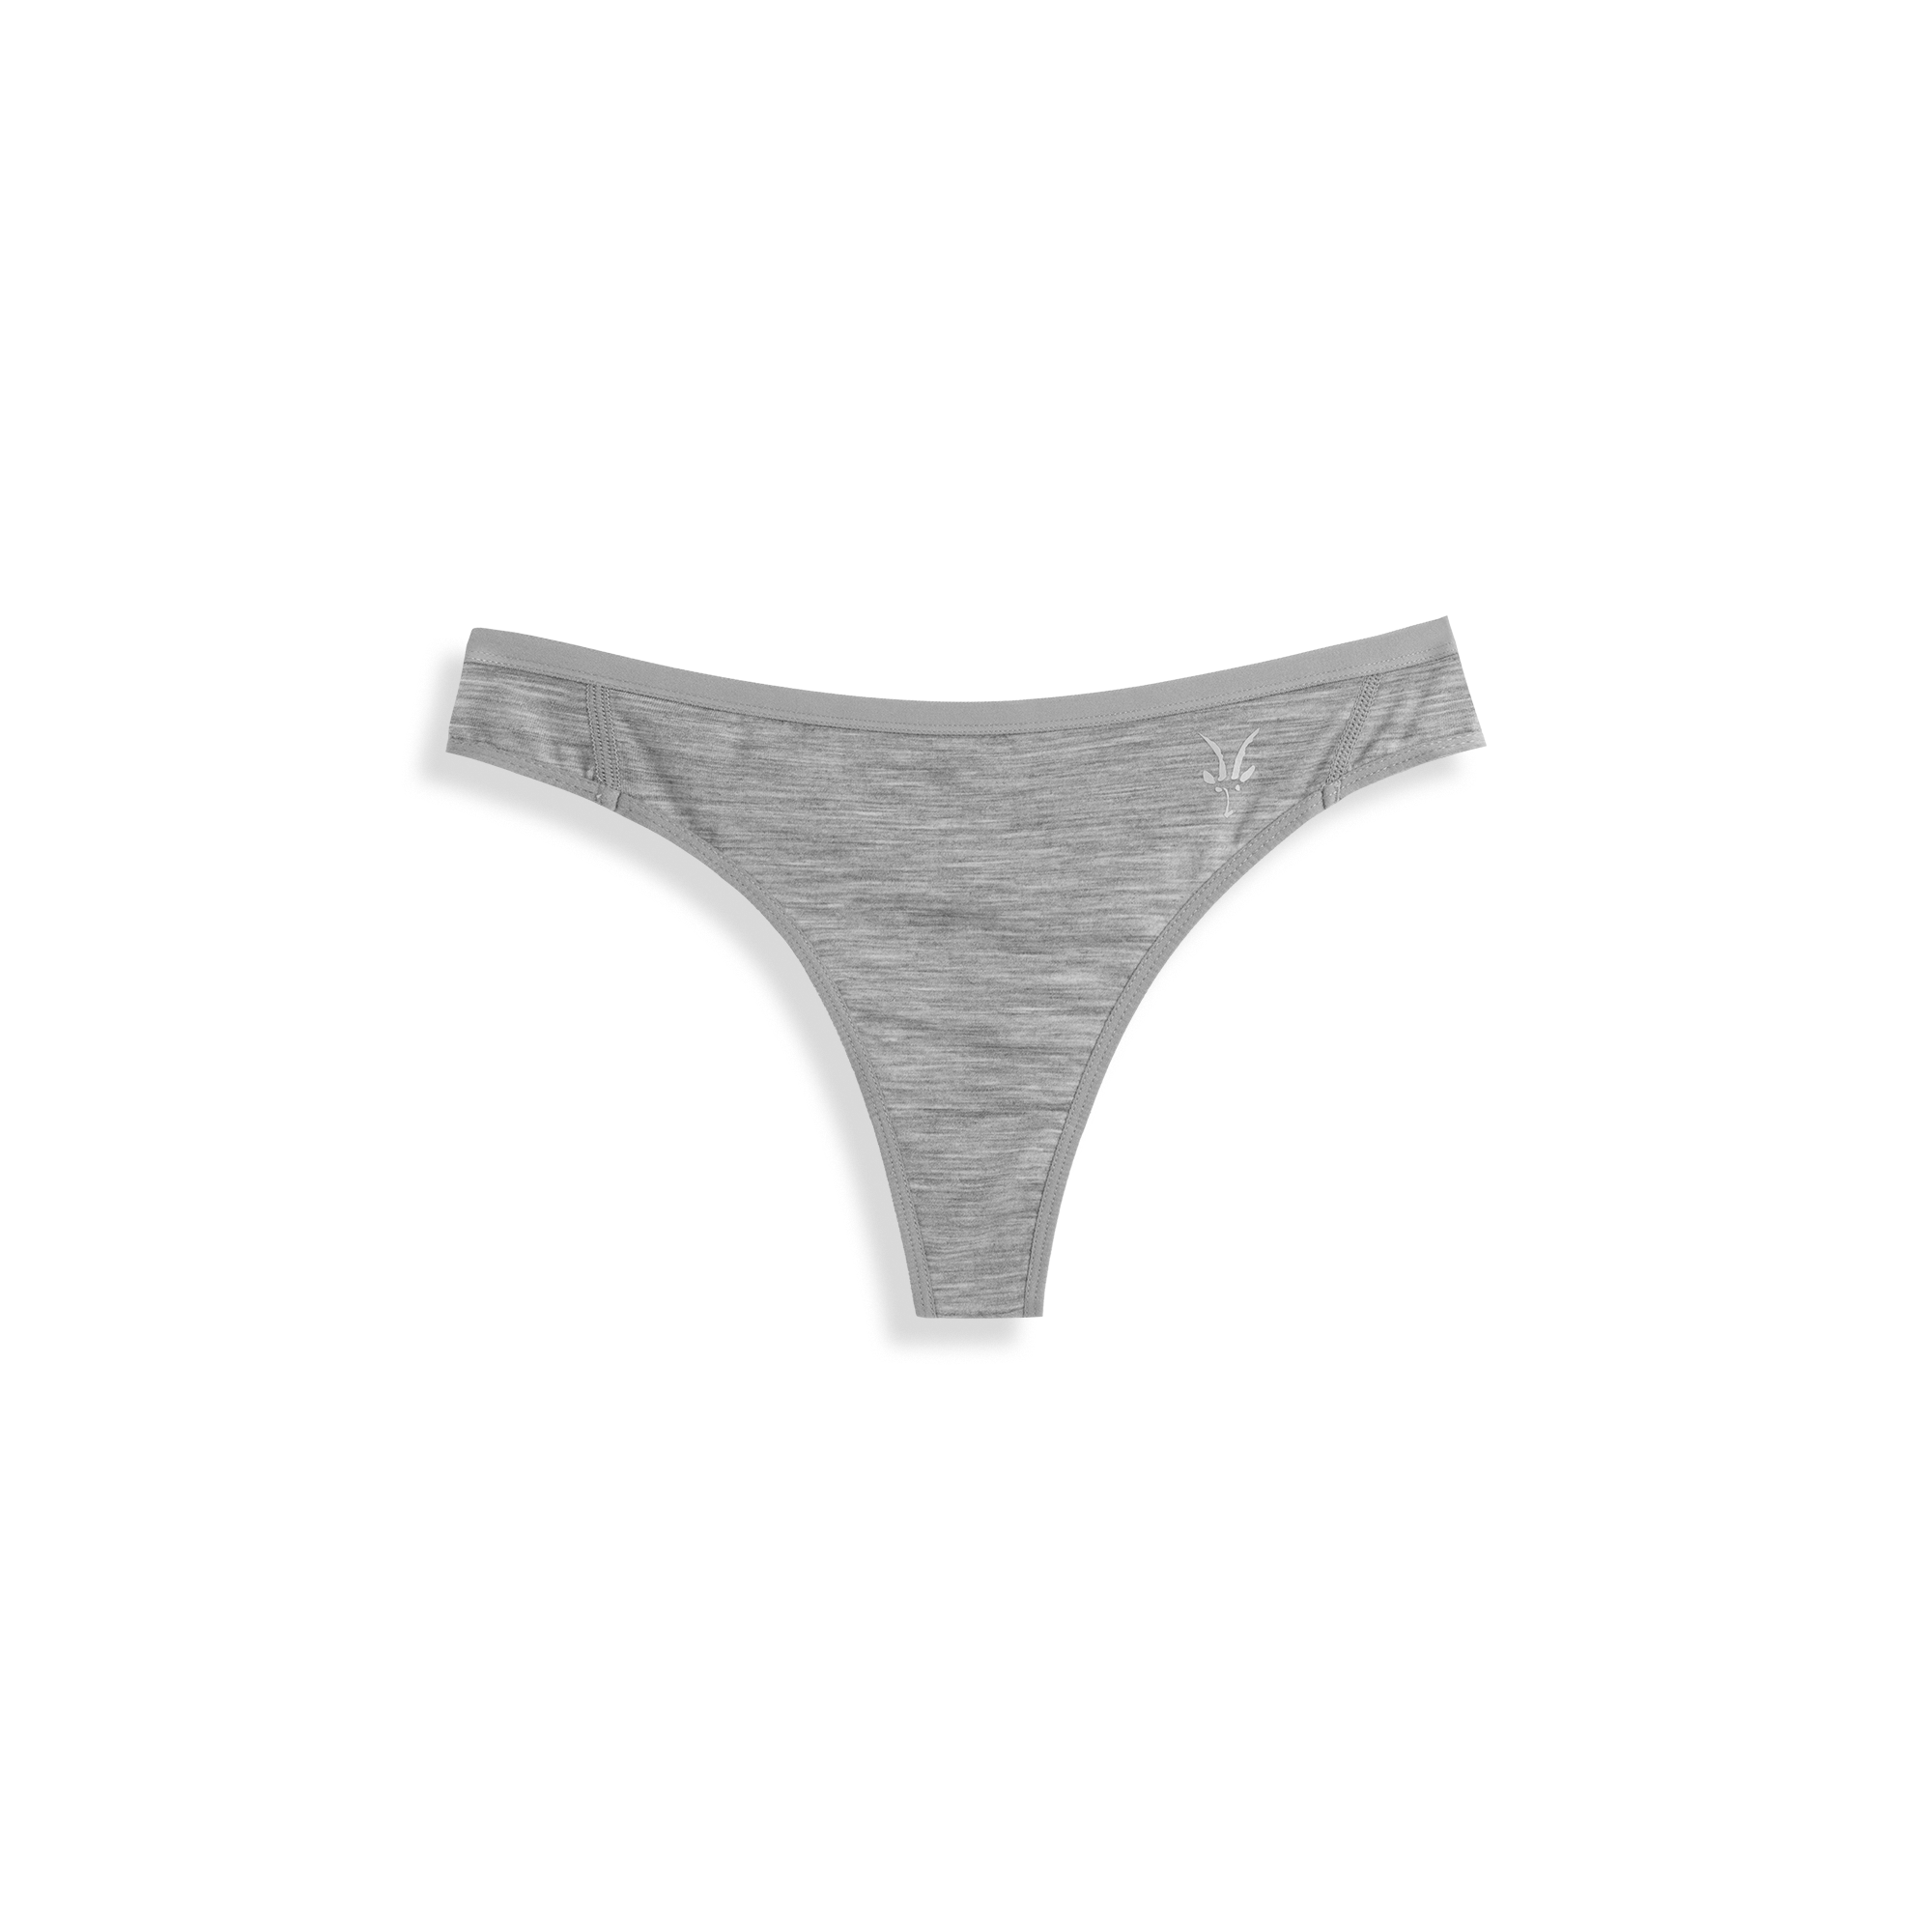 Womens Merino Wool Underwear - Wool Underwear For Women - Free Shipping –  Tagged size-sml– Woolx